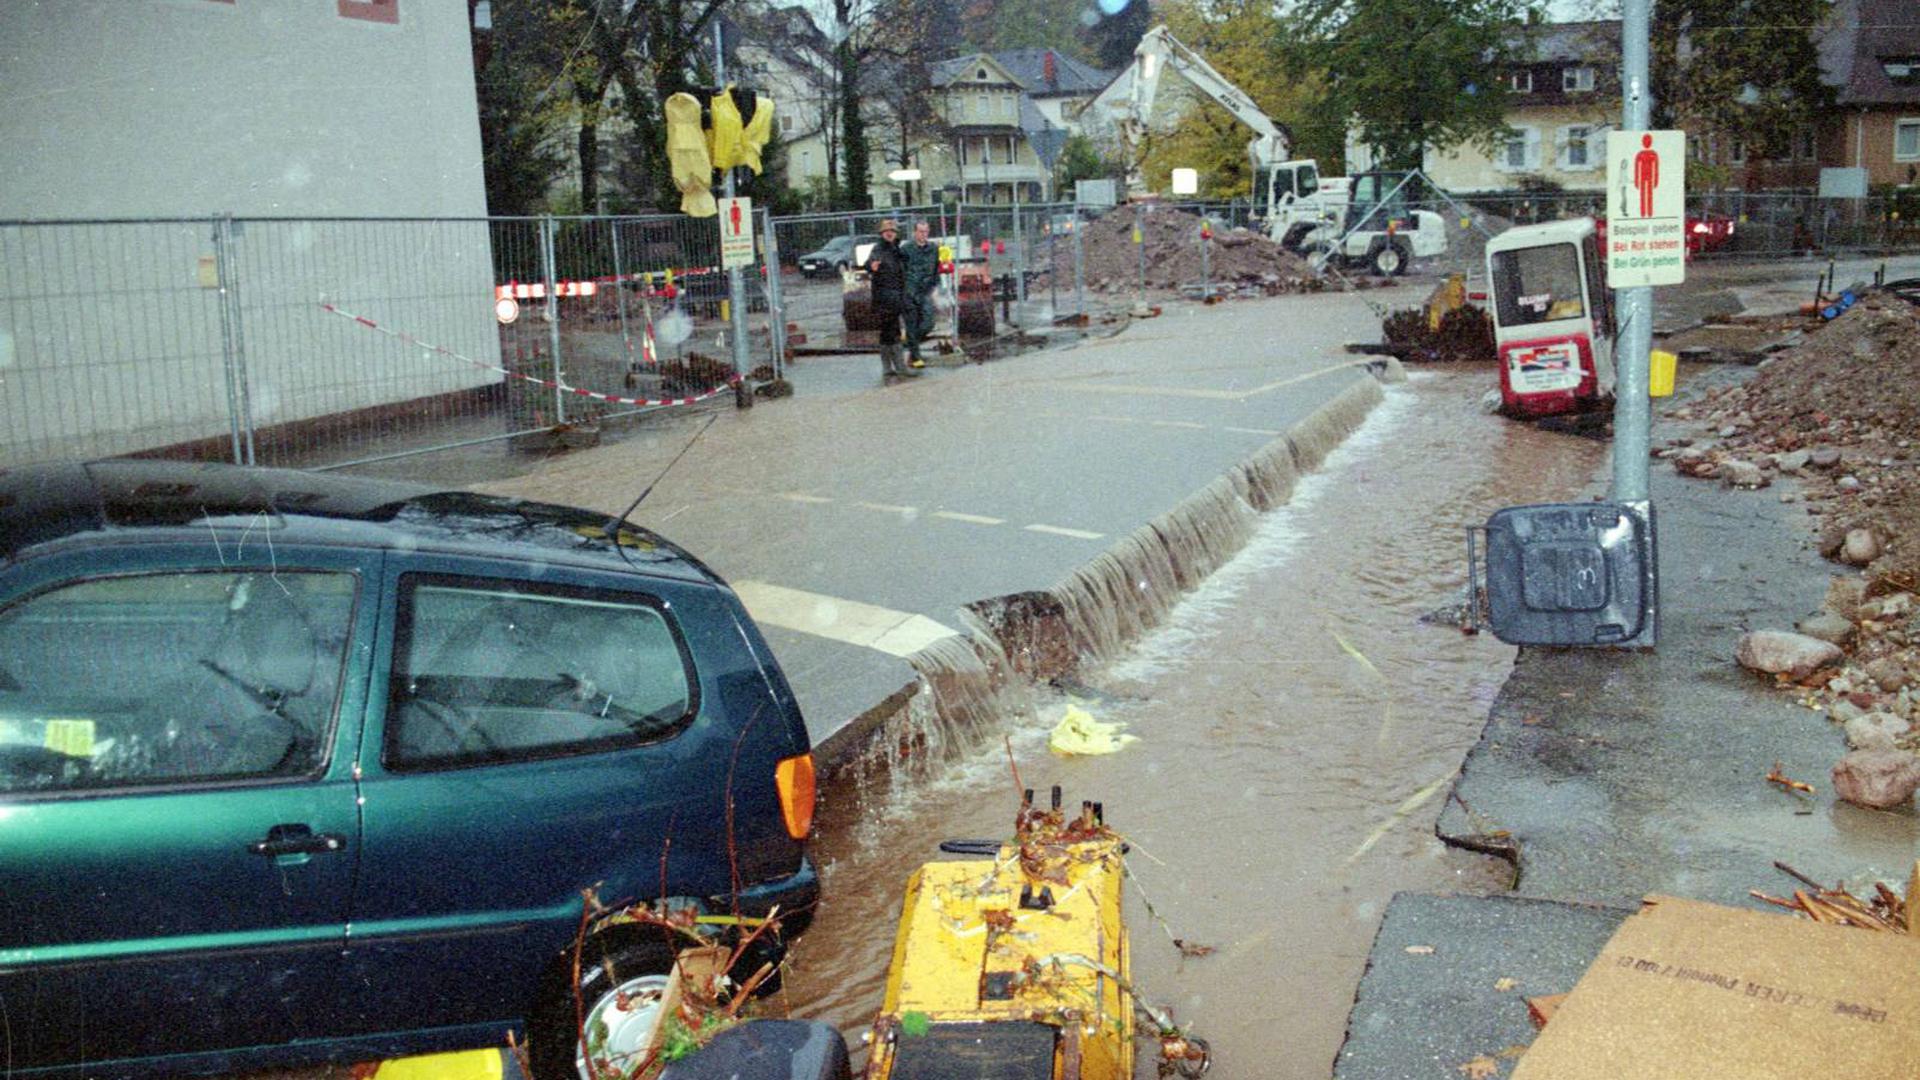 Katastrophenalarm herrschte nach dem Starkregen im Oktober 1998 in Baden-Baden – hier der überflutete Klosterplatz.